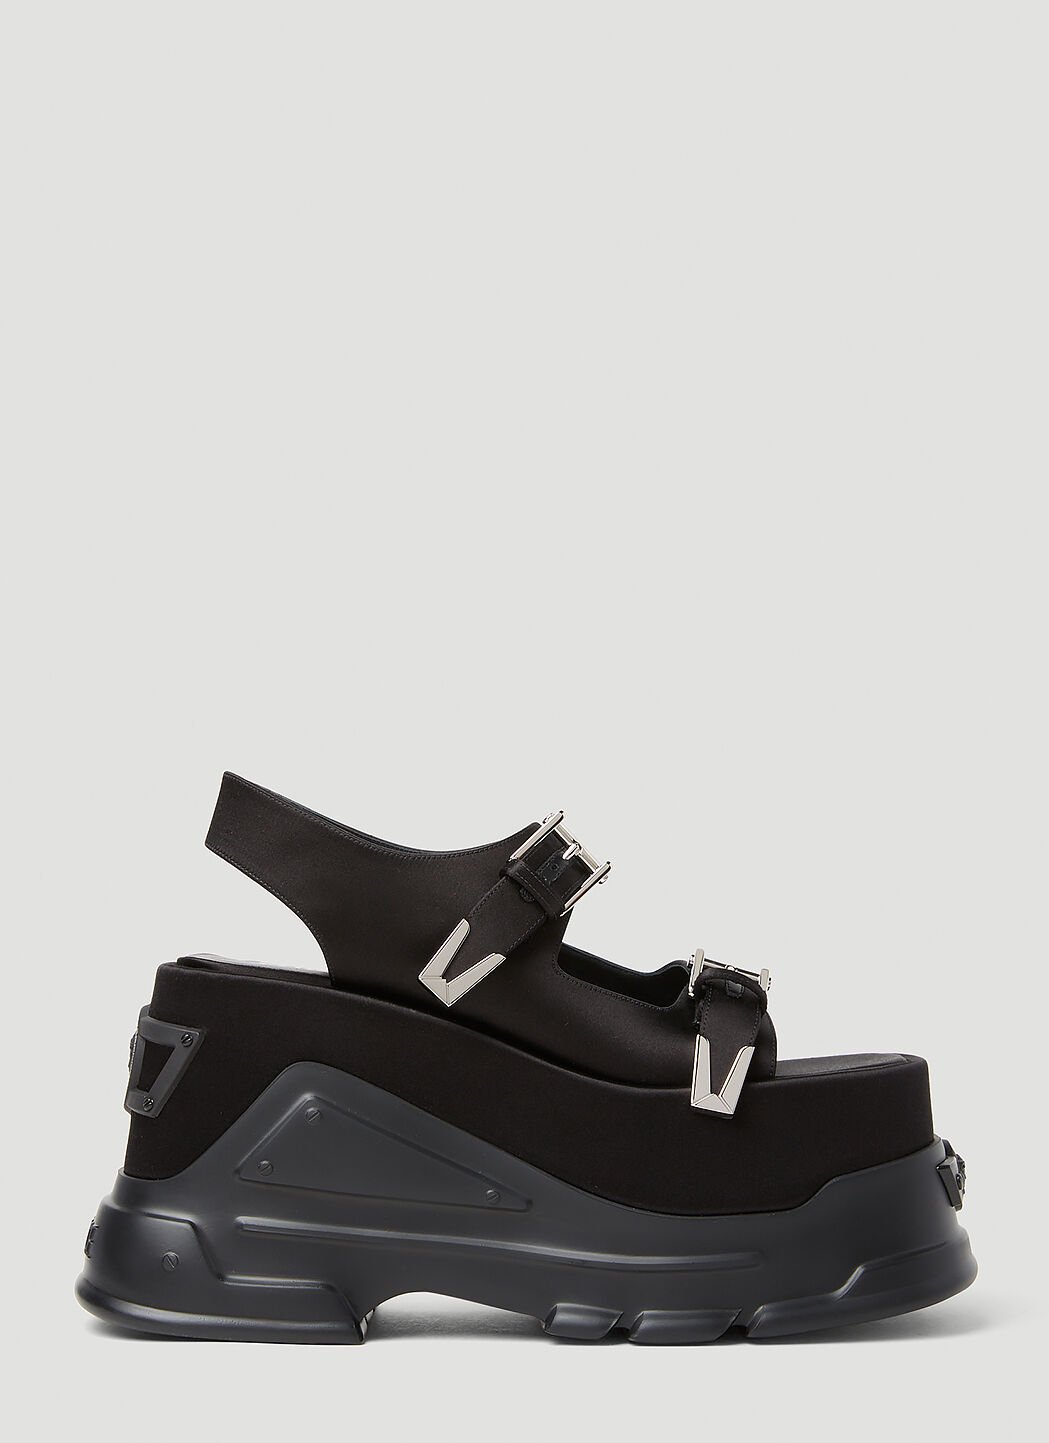 Jil Sander+ Platform Sandals Black jsp0255016